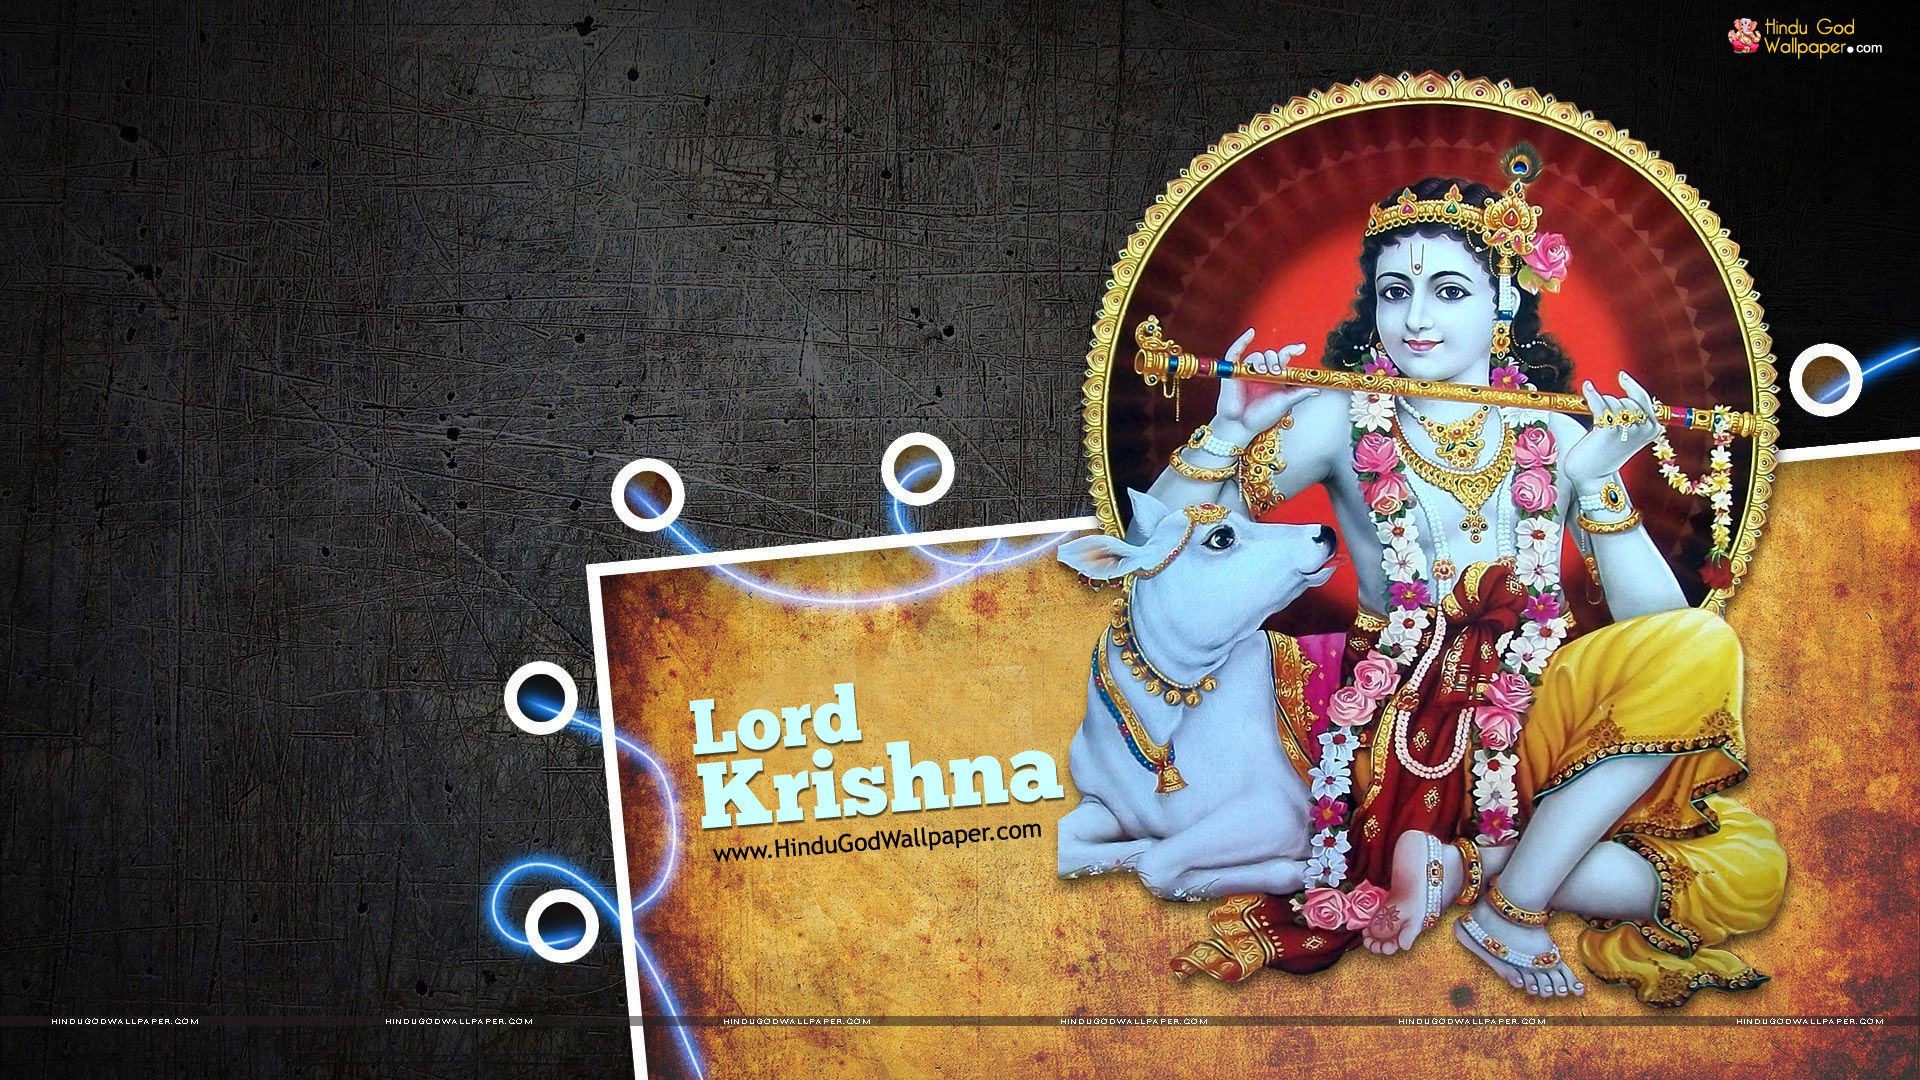 Lord Krishna Wallpaper 1080p Hd Full Size Download.